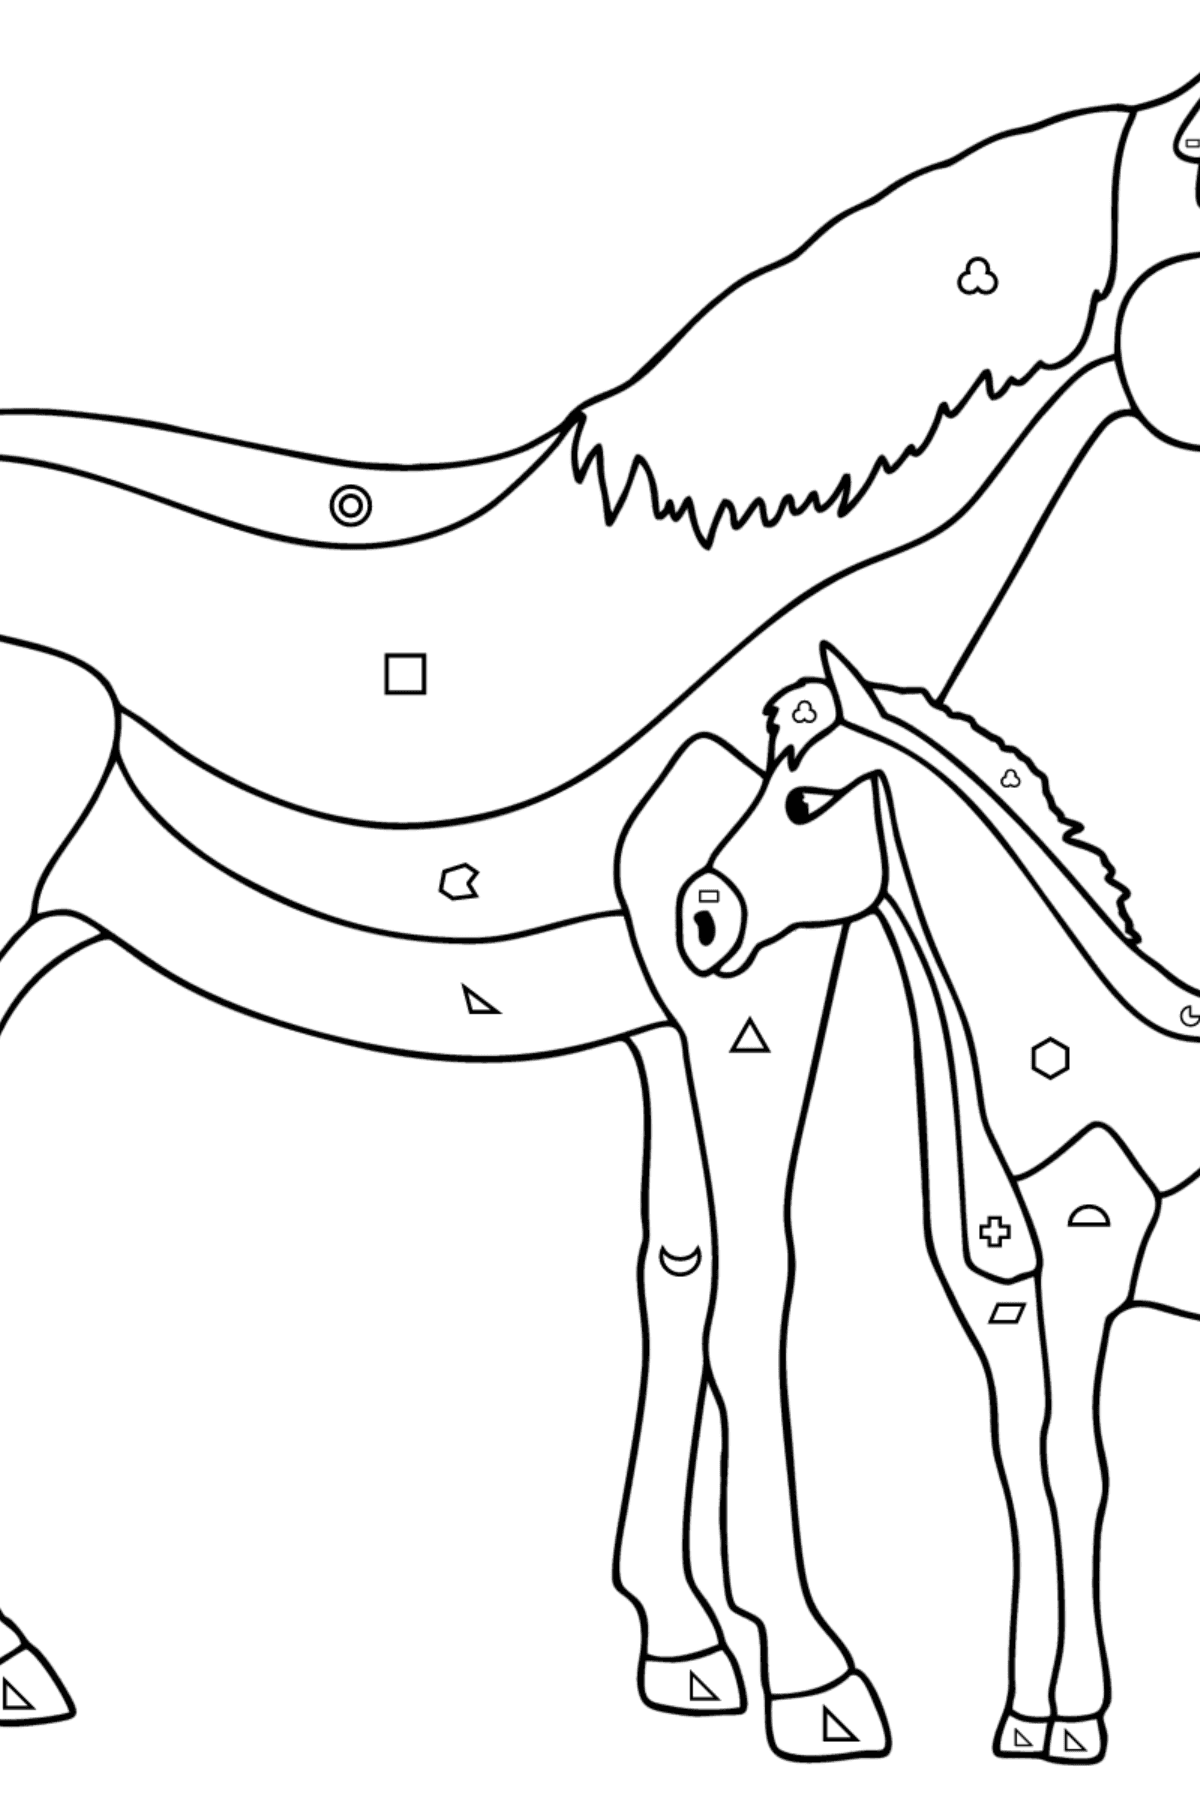 Målarbild Häst och föl - Färgläggning av geometriska former För barn